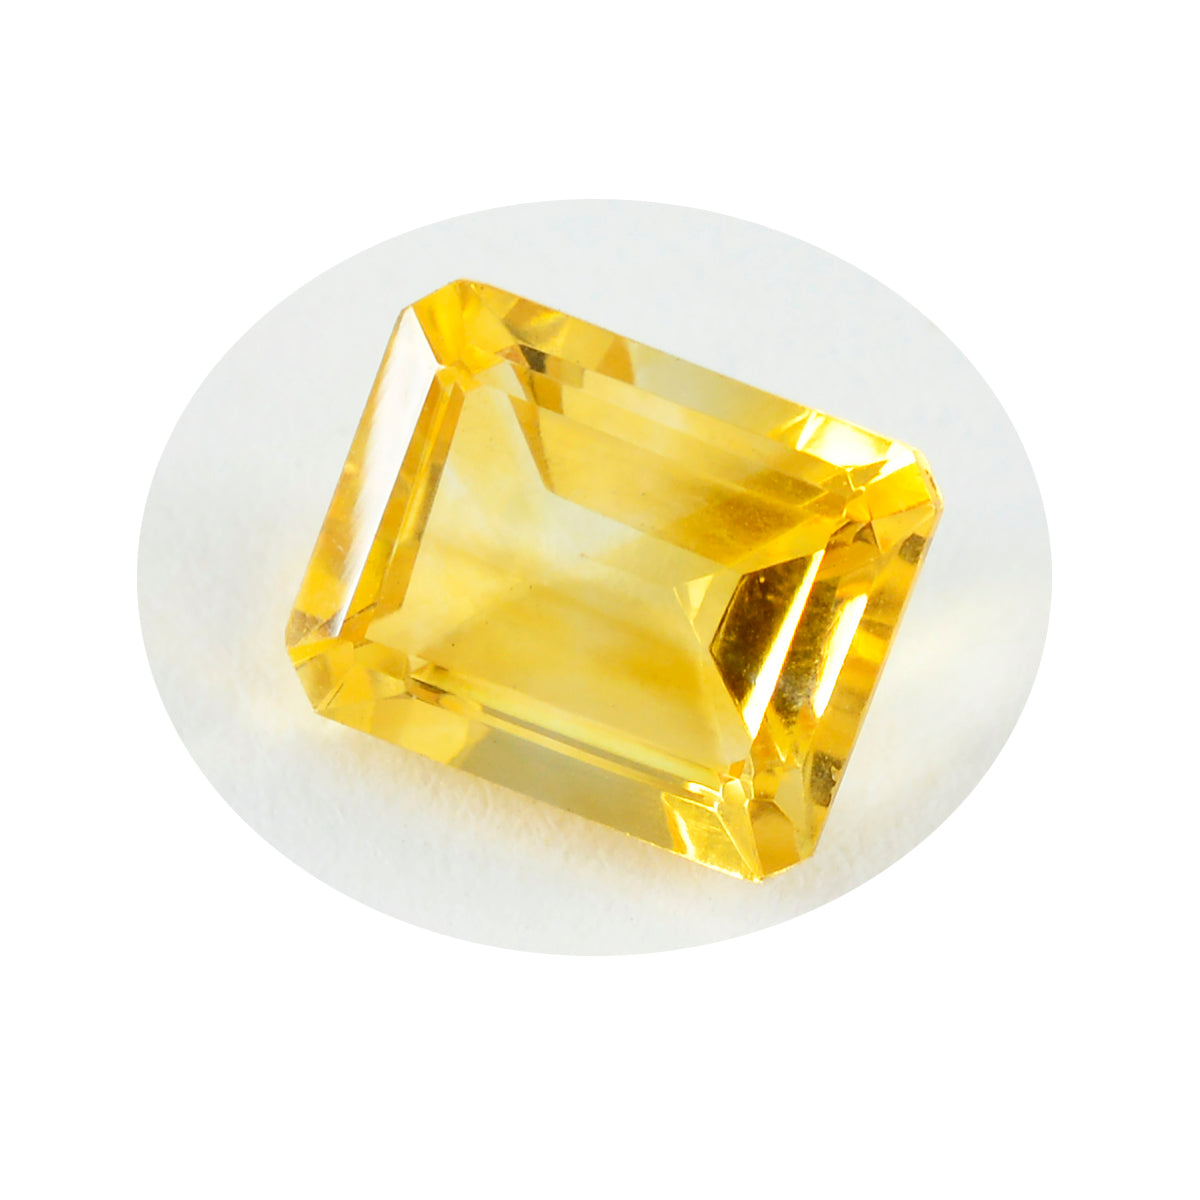 Riyogems, 1 unidad, citrino amarillo auténtico facetado, 12x16mm, forma octagonal, gema suelta de calidad fantástica